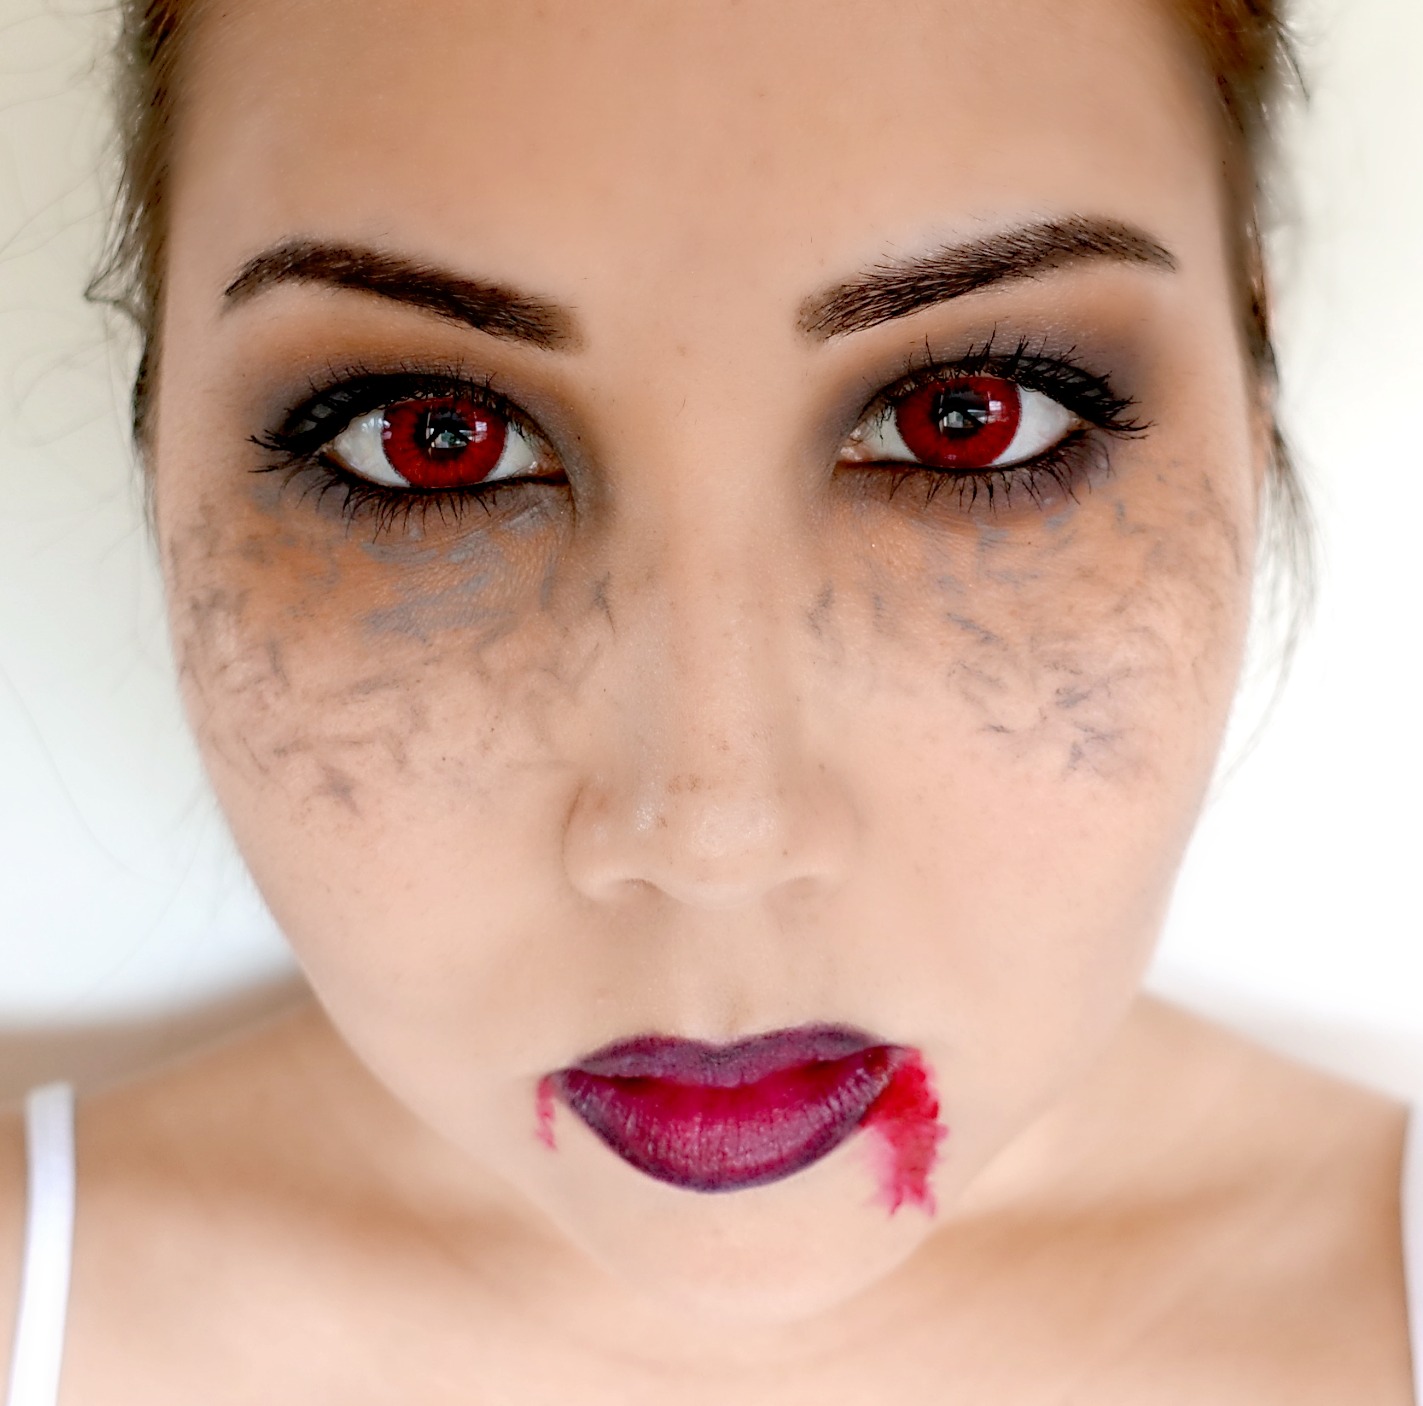 Easy Halloween Vampire Makeup Look Using Only "Regular" Makeup